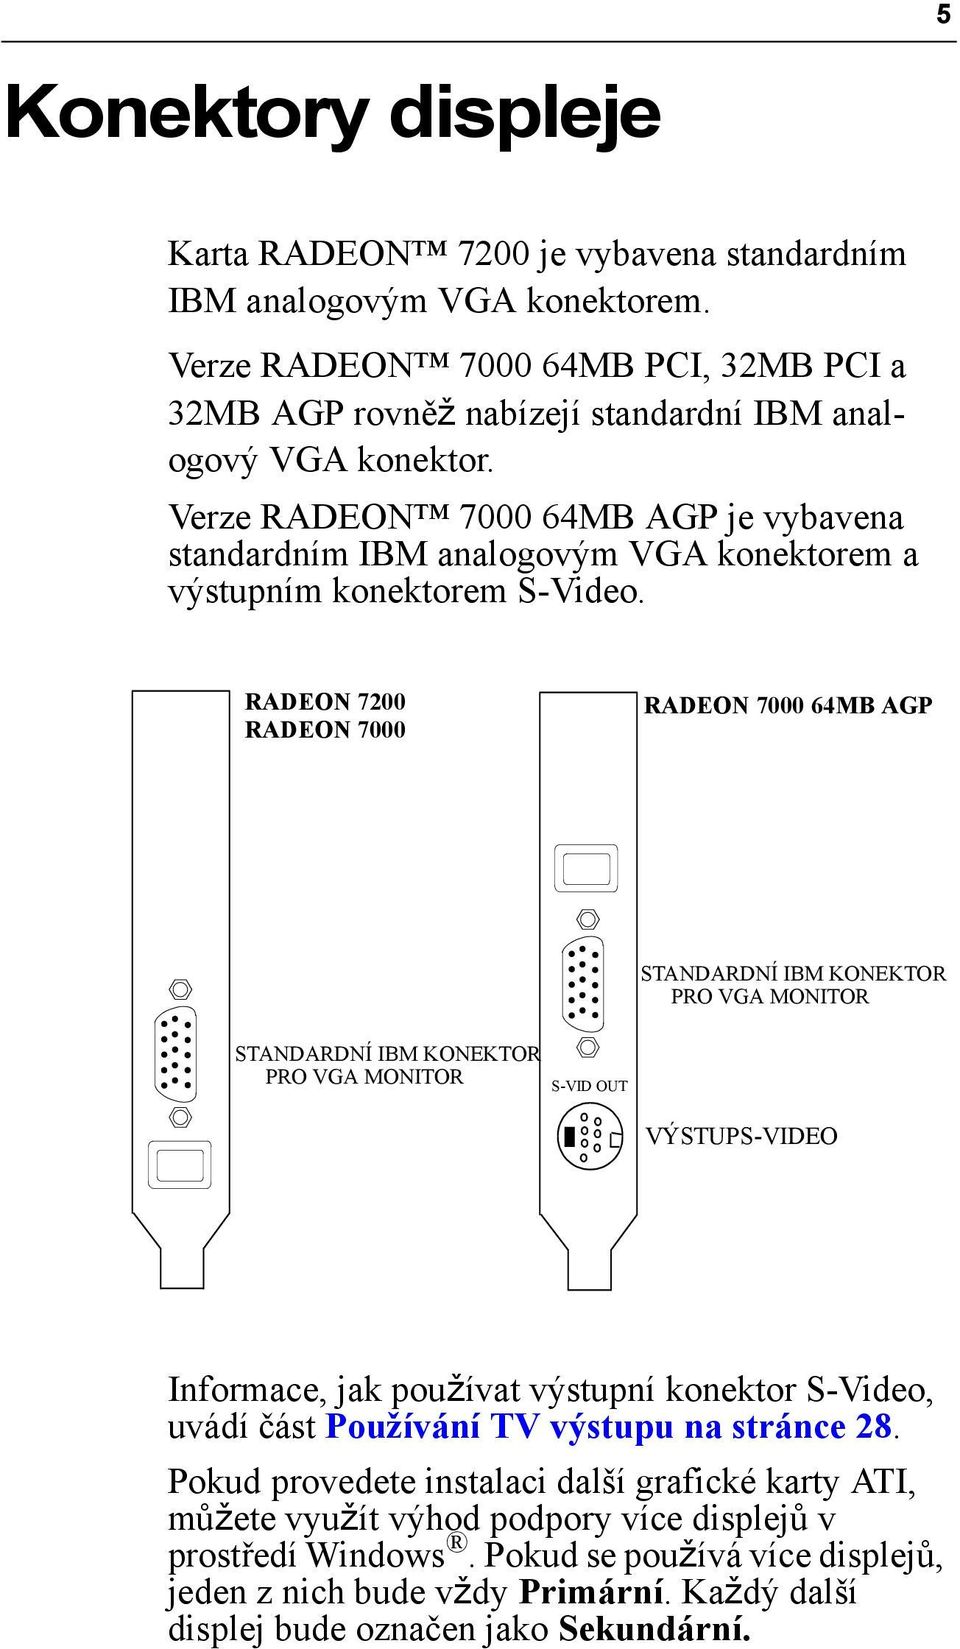 RADEON 7200 RADEON 7000 RADEON 7000 64MB AGP STANDARDNÍ IBM KONEKTOR PRO VGA MONITOR STANDARDNÍ IBM KONEKTOR PRO VGA MONITOR S-VID OUT VÝSTUPS-VIDEO Informace, jak používat výstupní konektor